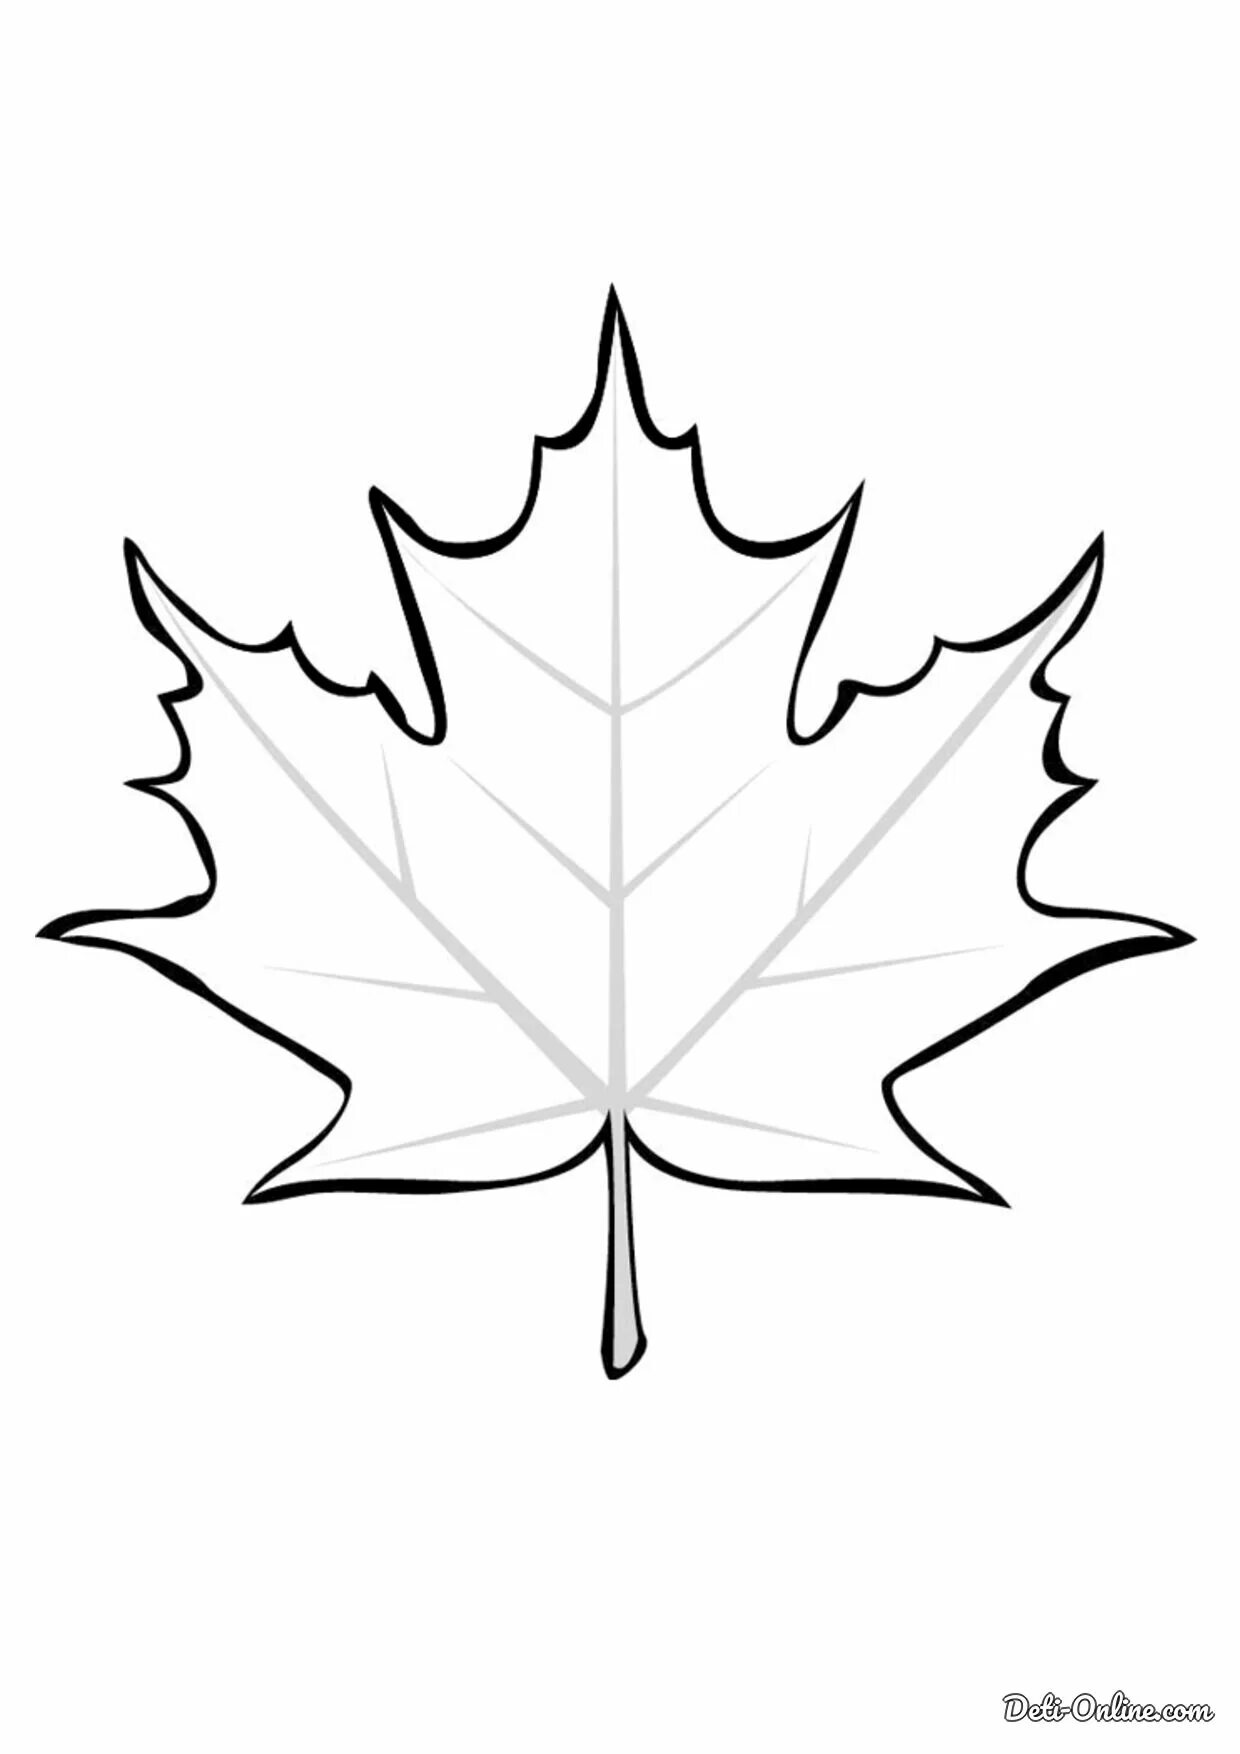 Maple leaf #22